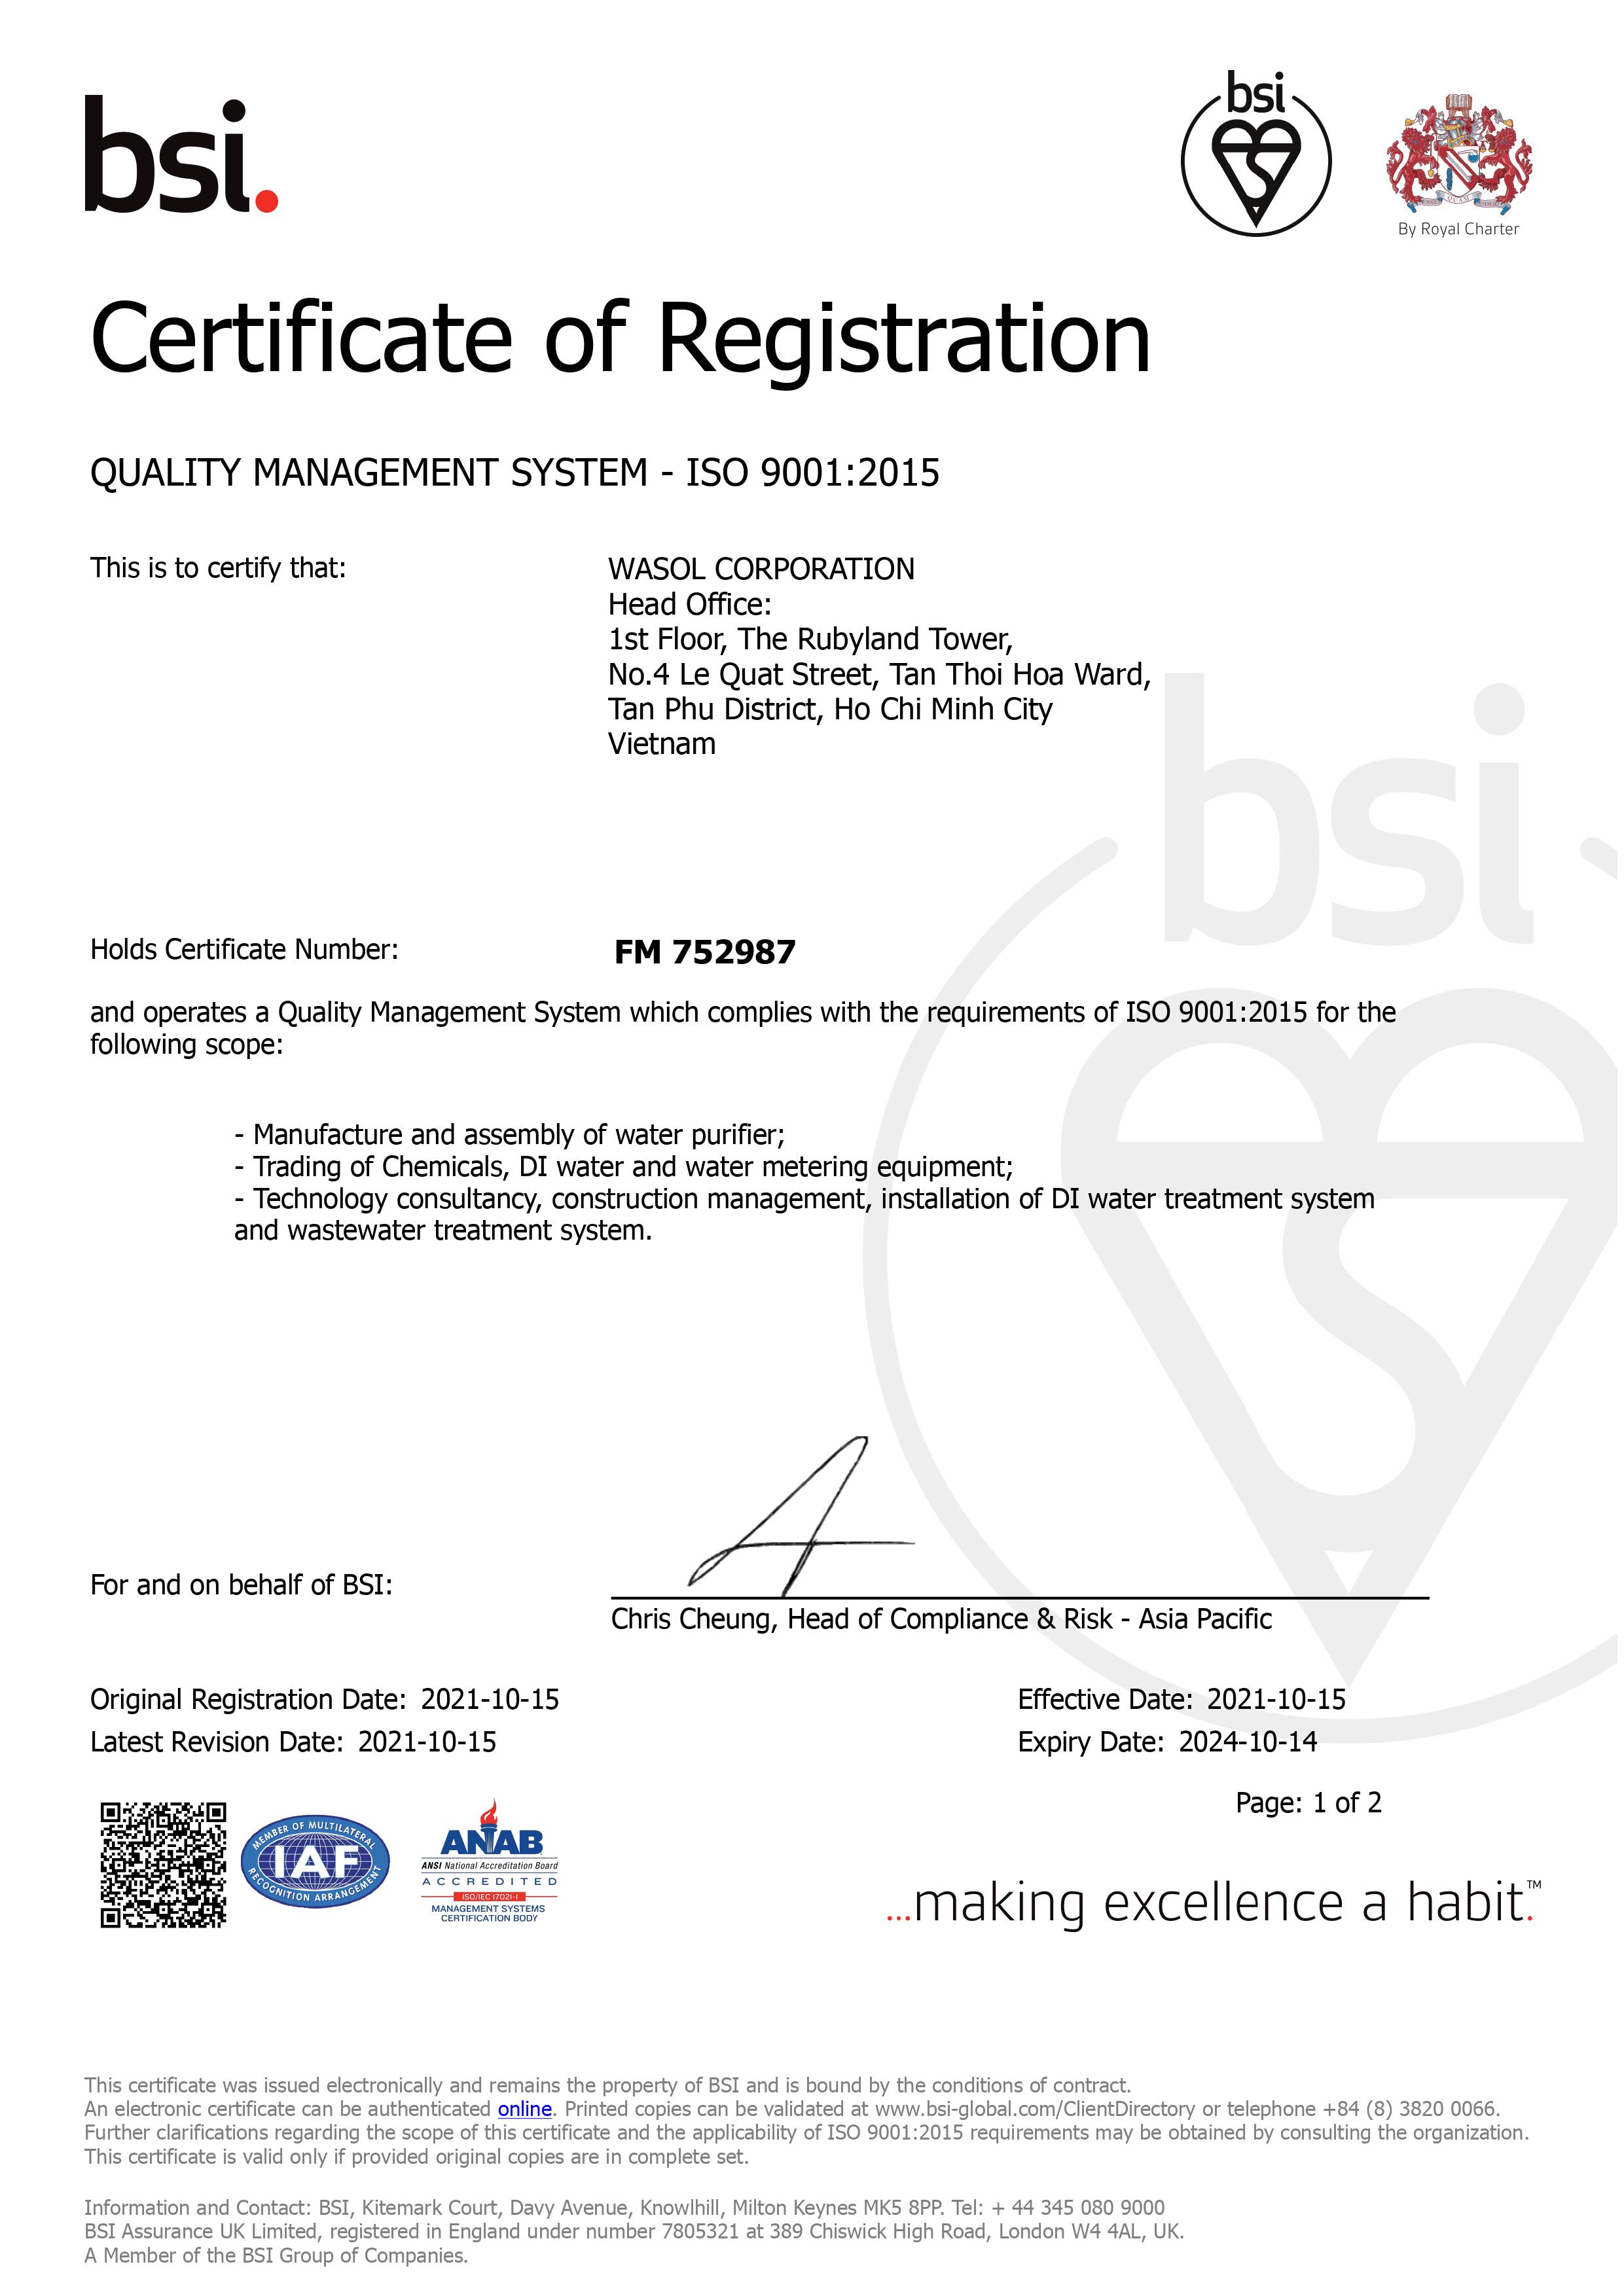 ISO 9001:2015 by the British Standard Institution - BSI Vietnam